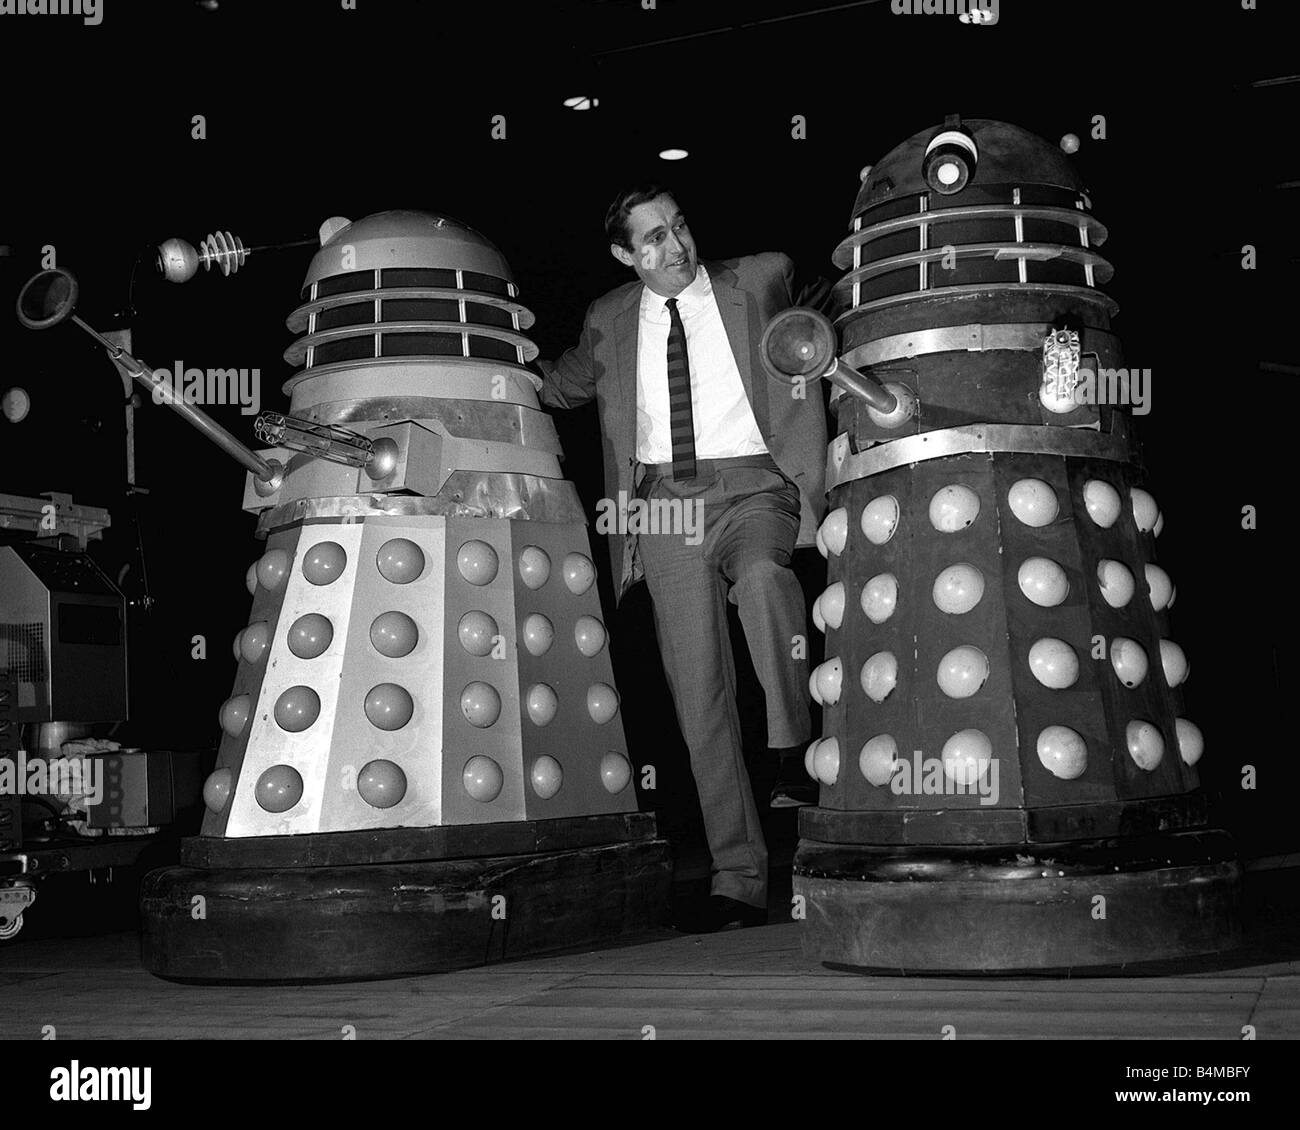 Terry Nation mit Daleks Dezember 1964 Terry Nation Autor Regisseur Produzent Bild mit seiner Schöpfung die Daleks Tv Programm Arzt, die Roboter Fernsehen Programme Dalek Scifi Science Fiction der 1960er Jahre Stockfoto